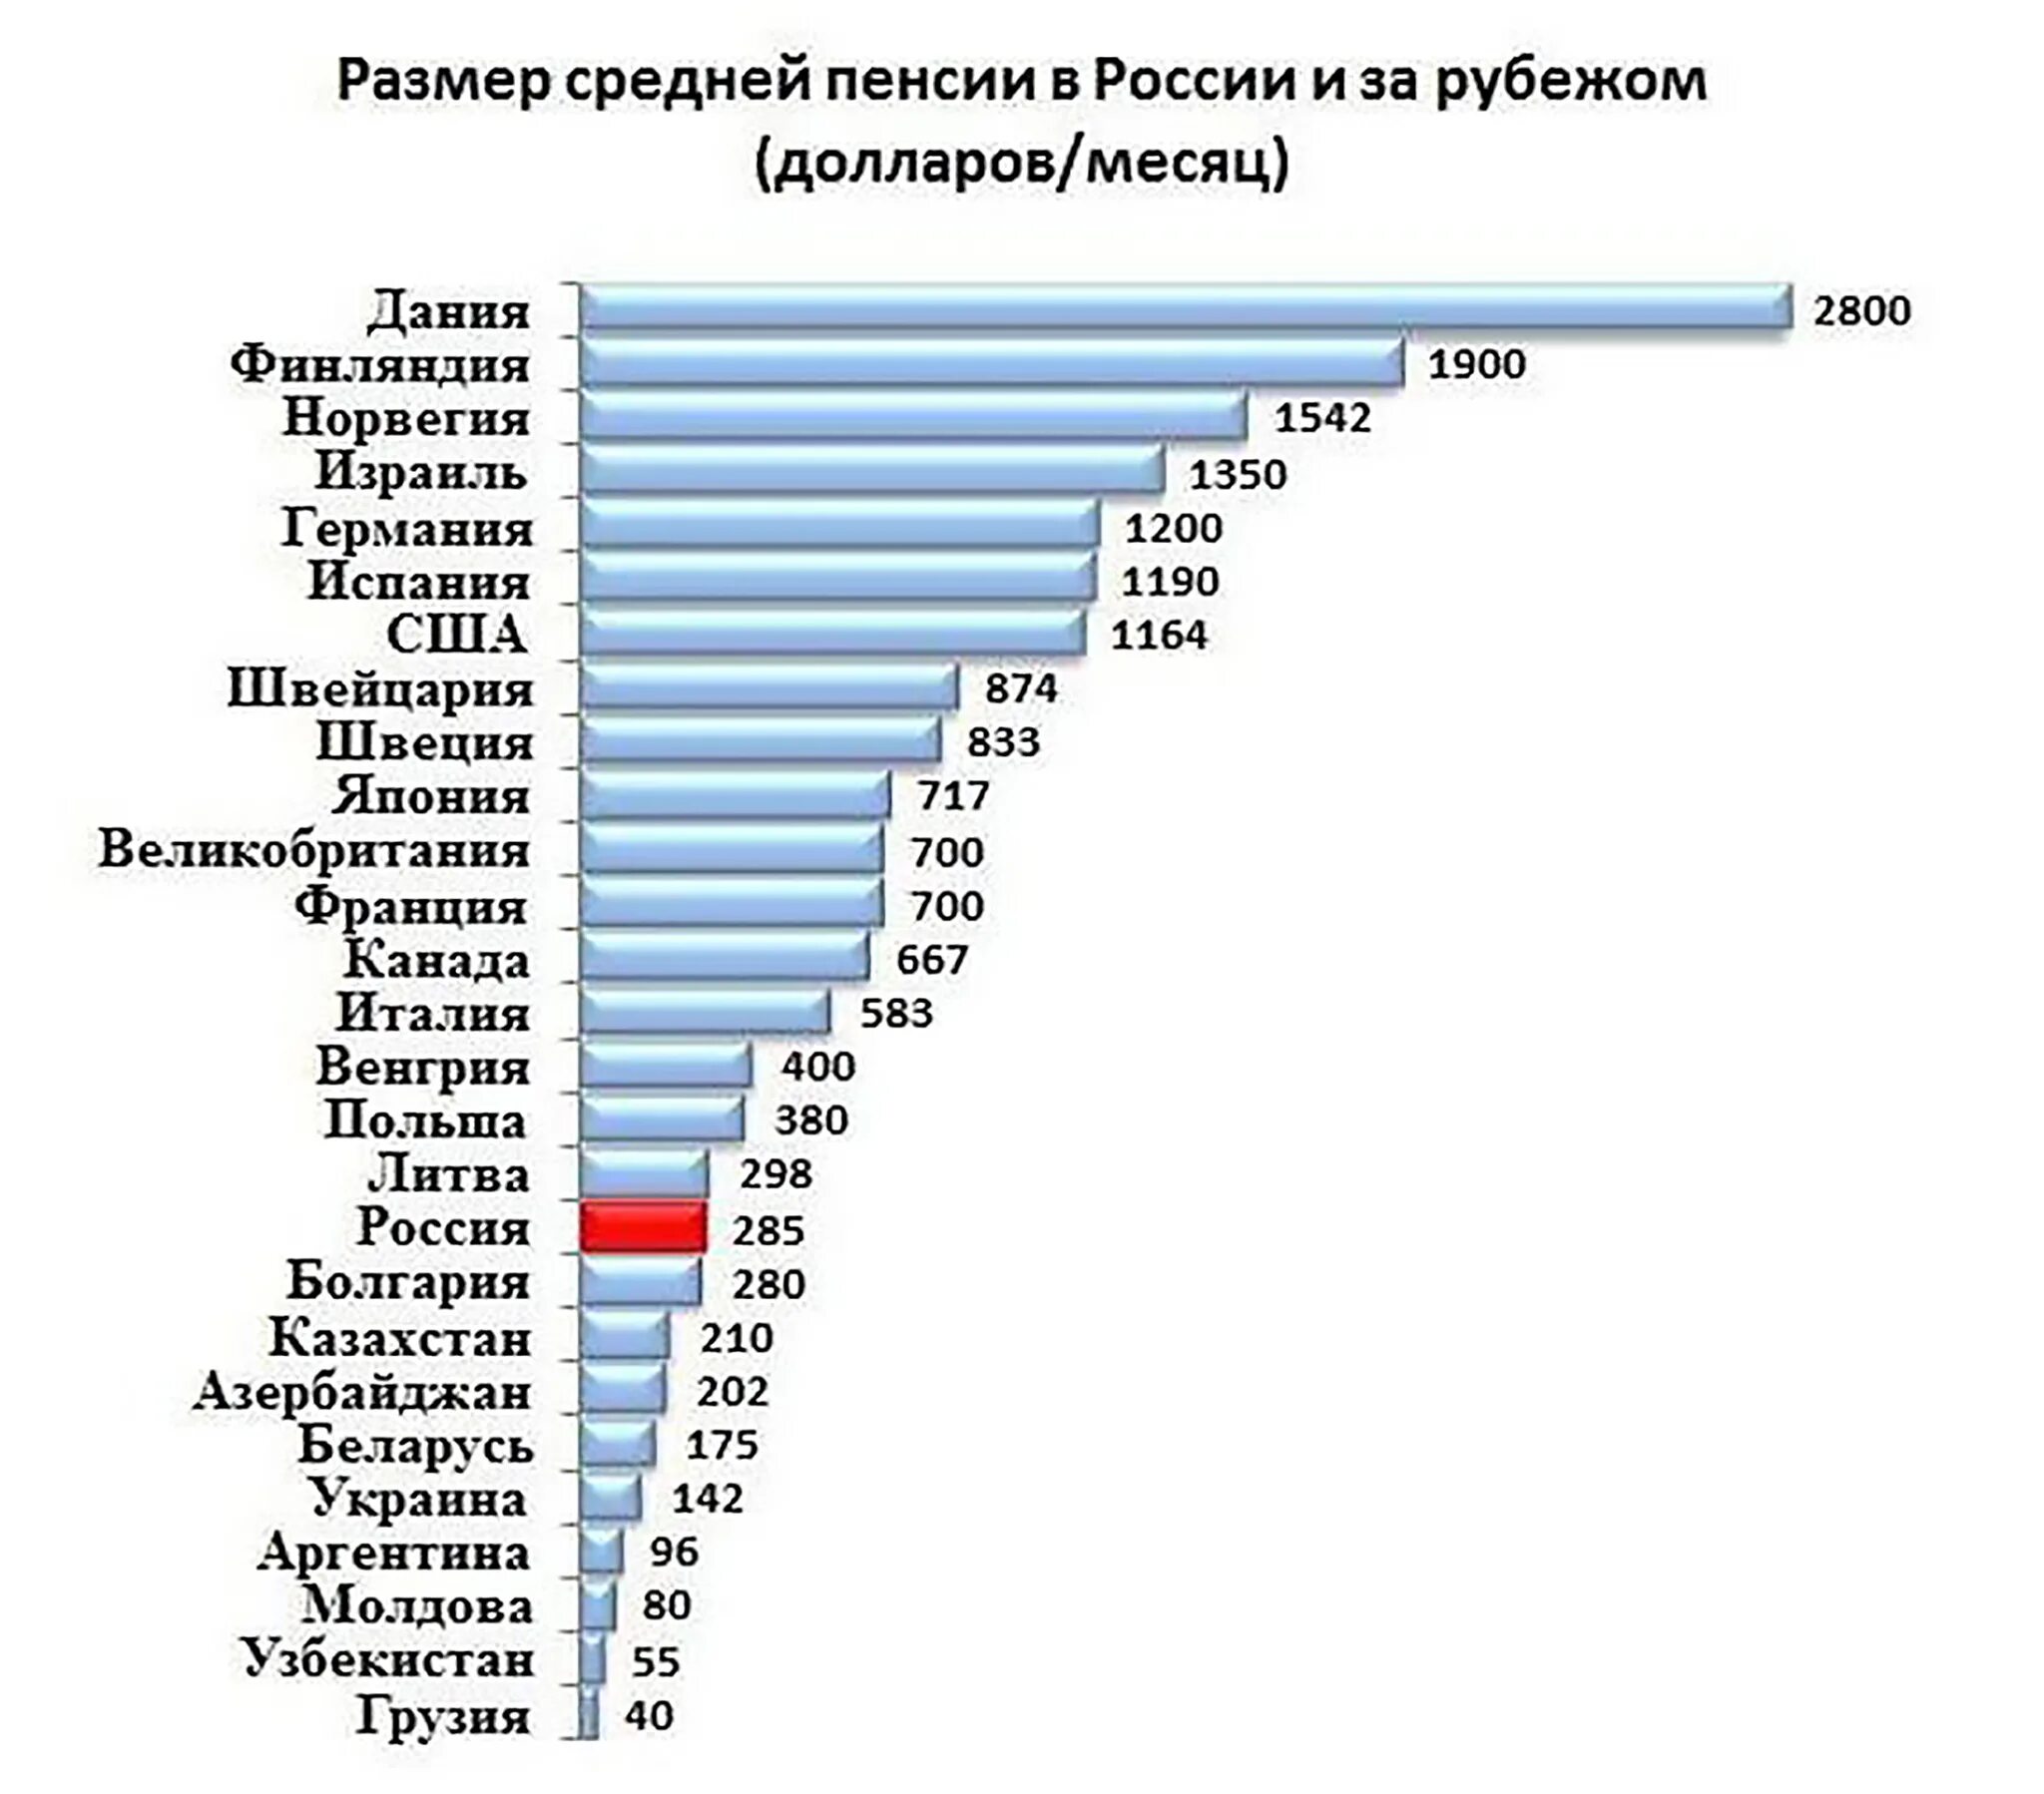 Размер пенсий в разных странах таблица. Размер пенсии в европейских странах. Размер пенсий в разных странах таблица в рублях. Самые низкие пенсии в мире таблица.